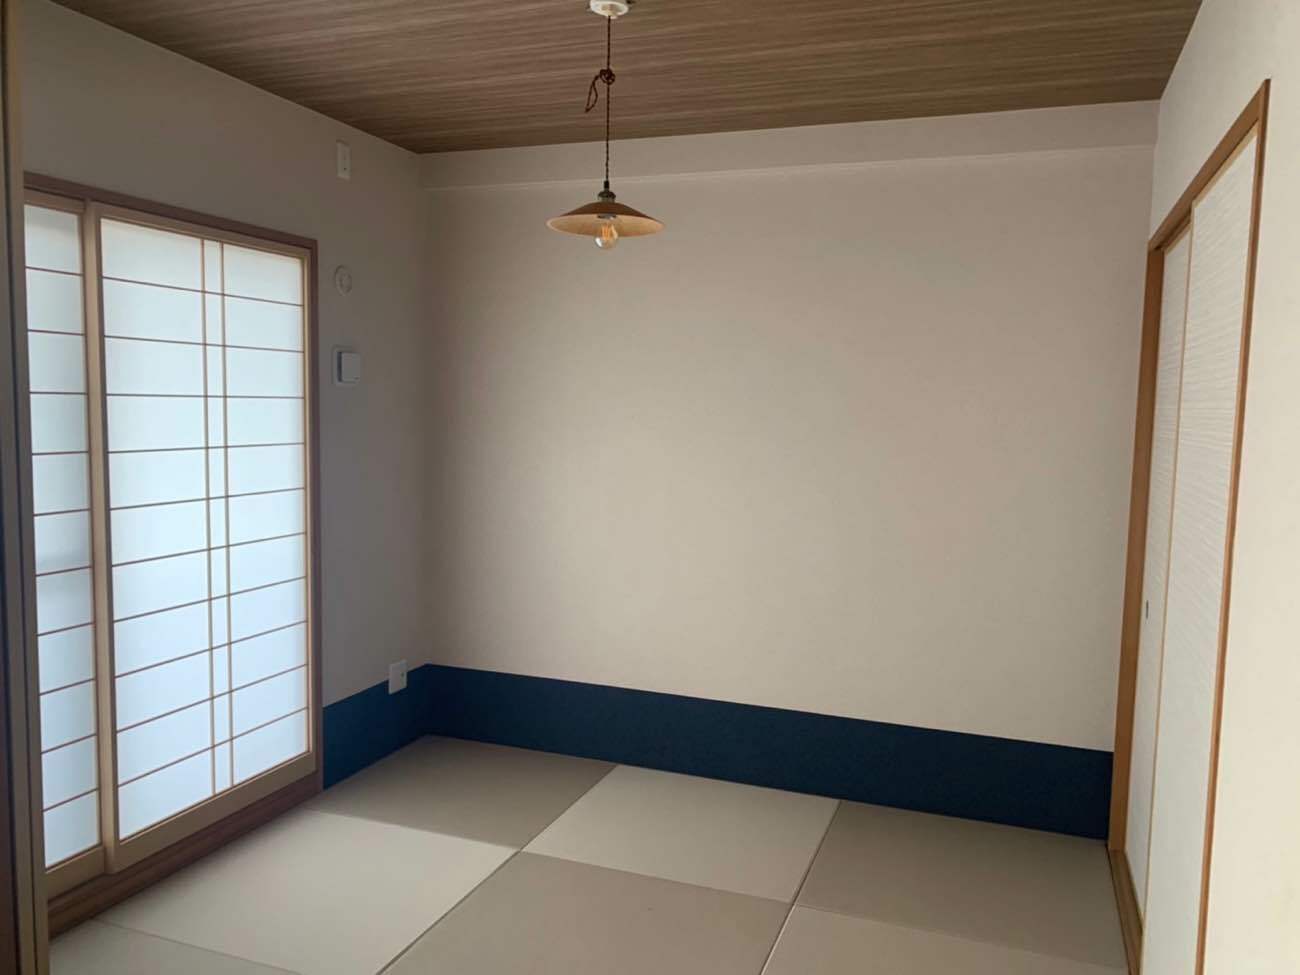 東大阪市のマンションで和室の内装工事しました